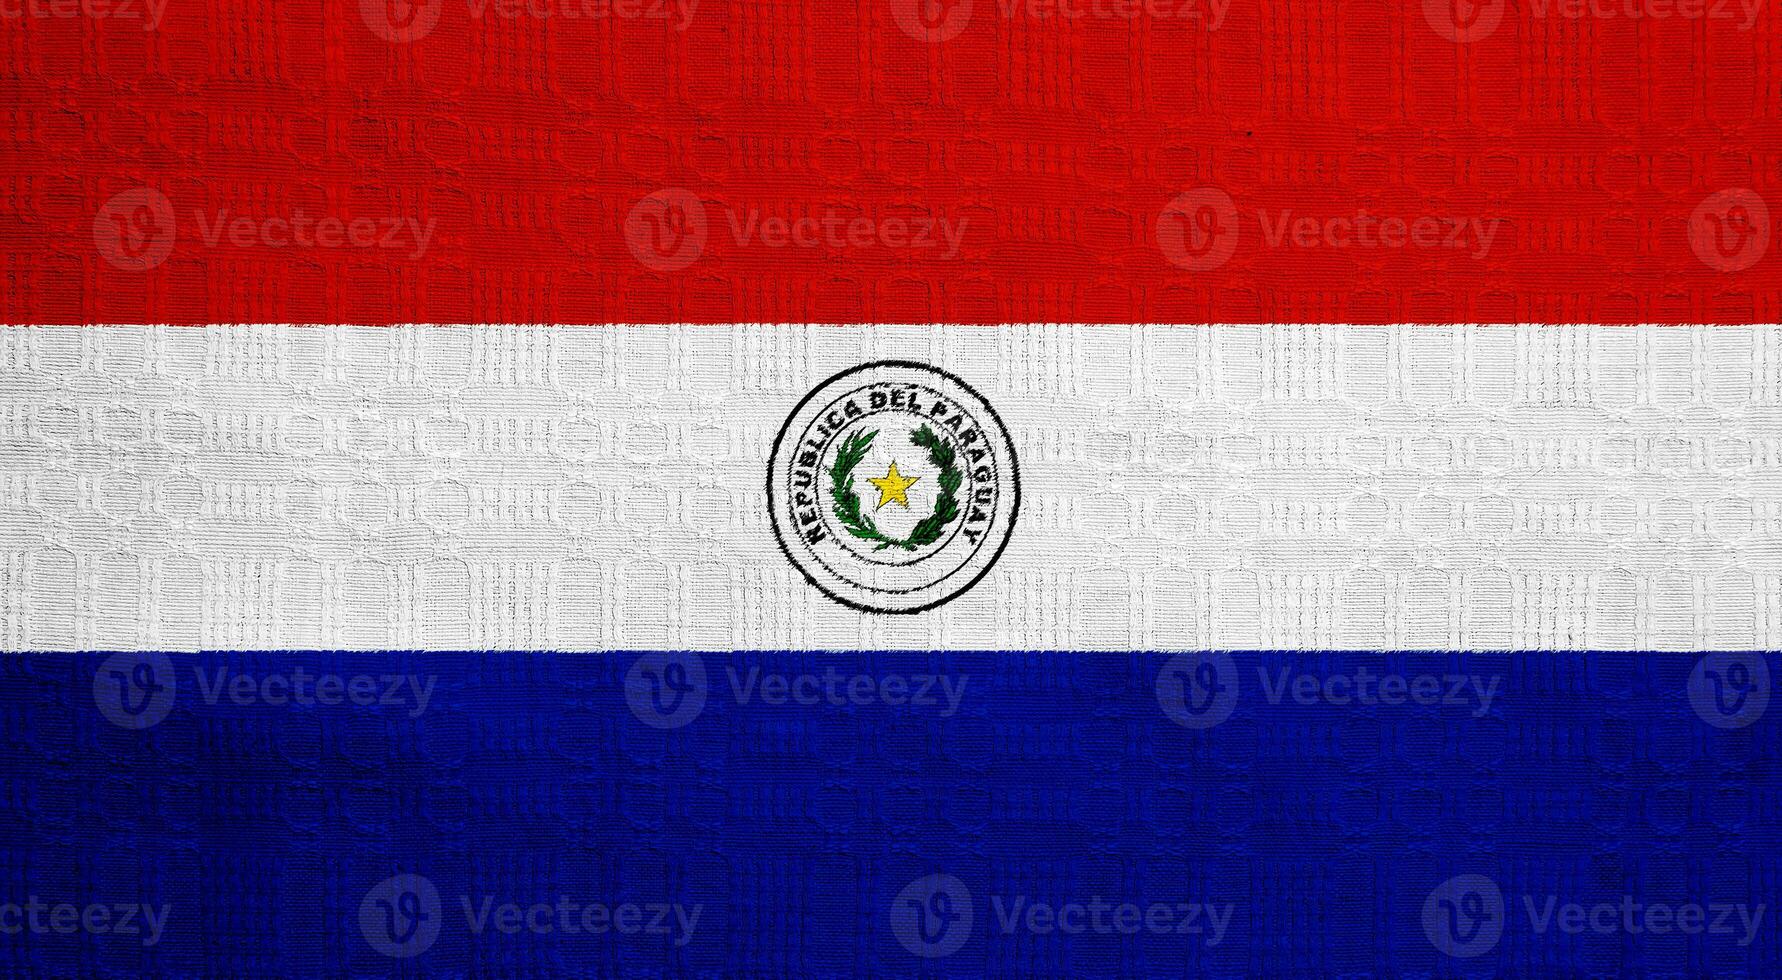 flagga av republik av paraguay på en texturerad bakgrund. begrepp collage. foto